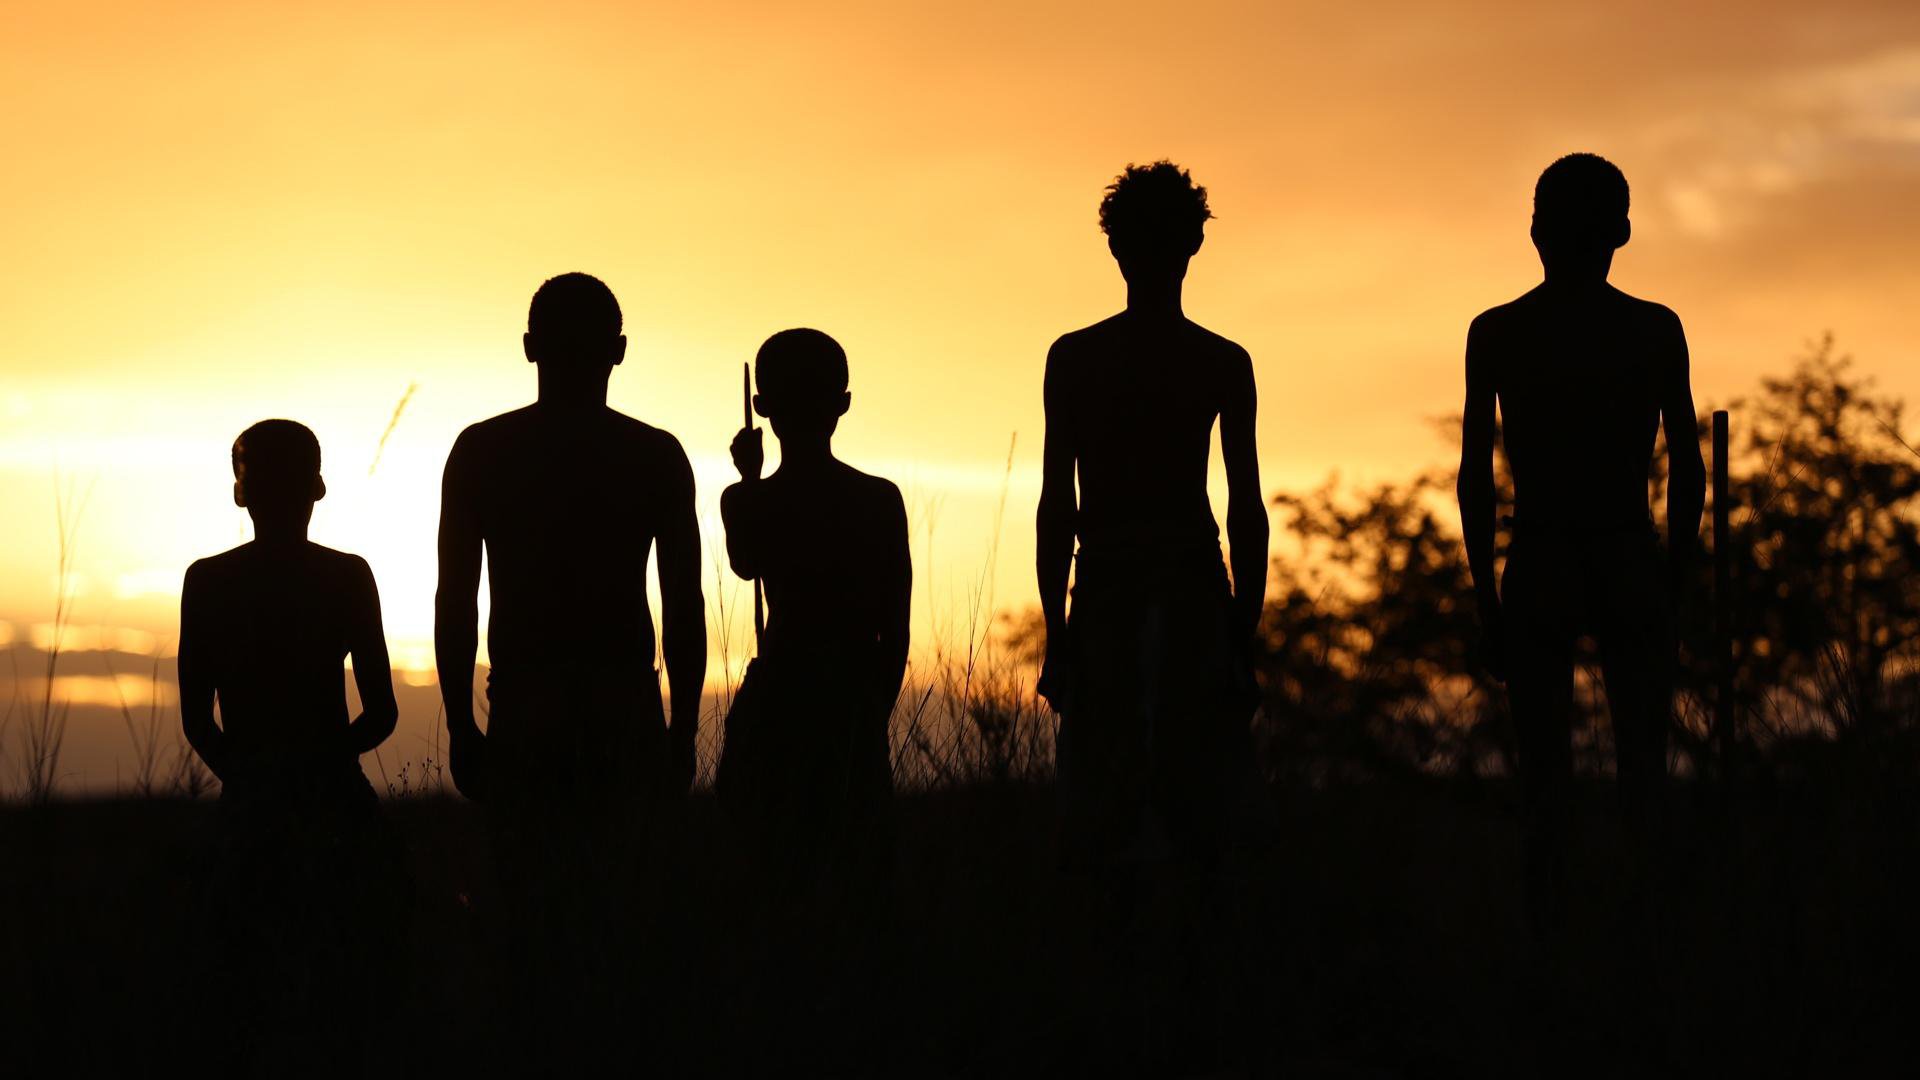 Археологи выяснили, что раньше на Земле было 9 видов людей, но сегодня остался только один sapiens, человека, привела, видов, людей, более, видом, единственным, менее, назад, человек, Африки, оказался, начал, развиваться, южной, части, конкурентноспособным, догадались, сейчас